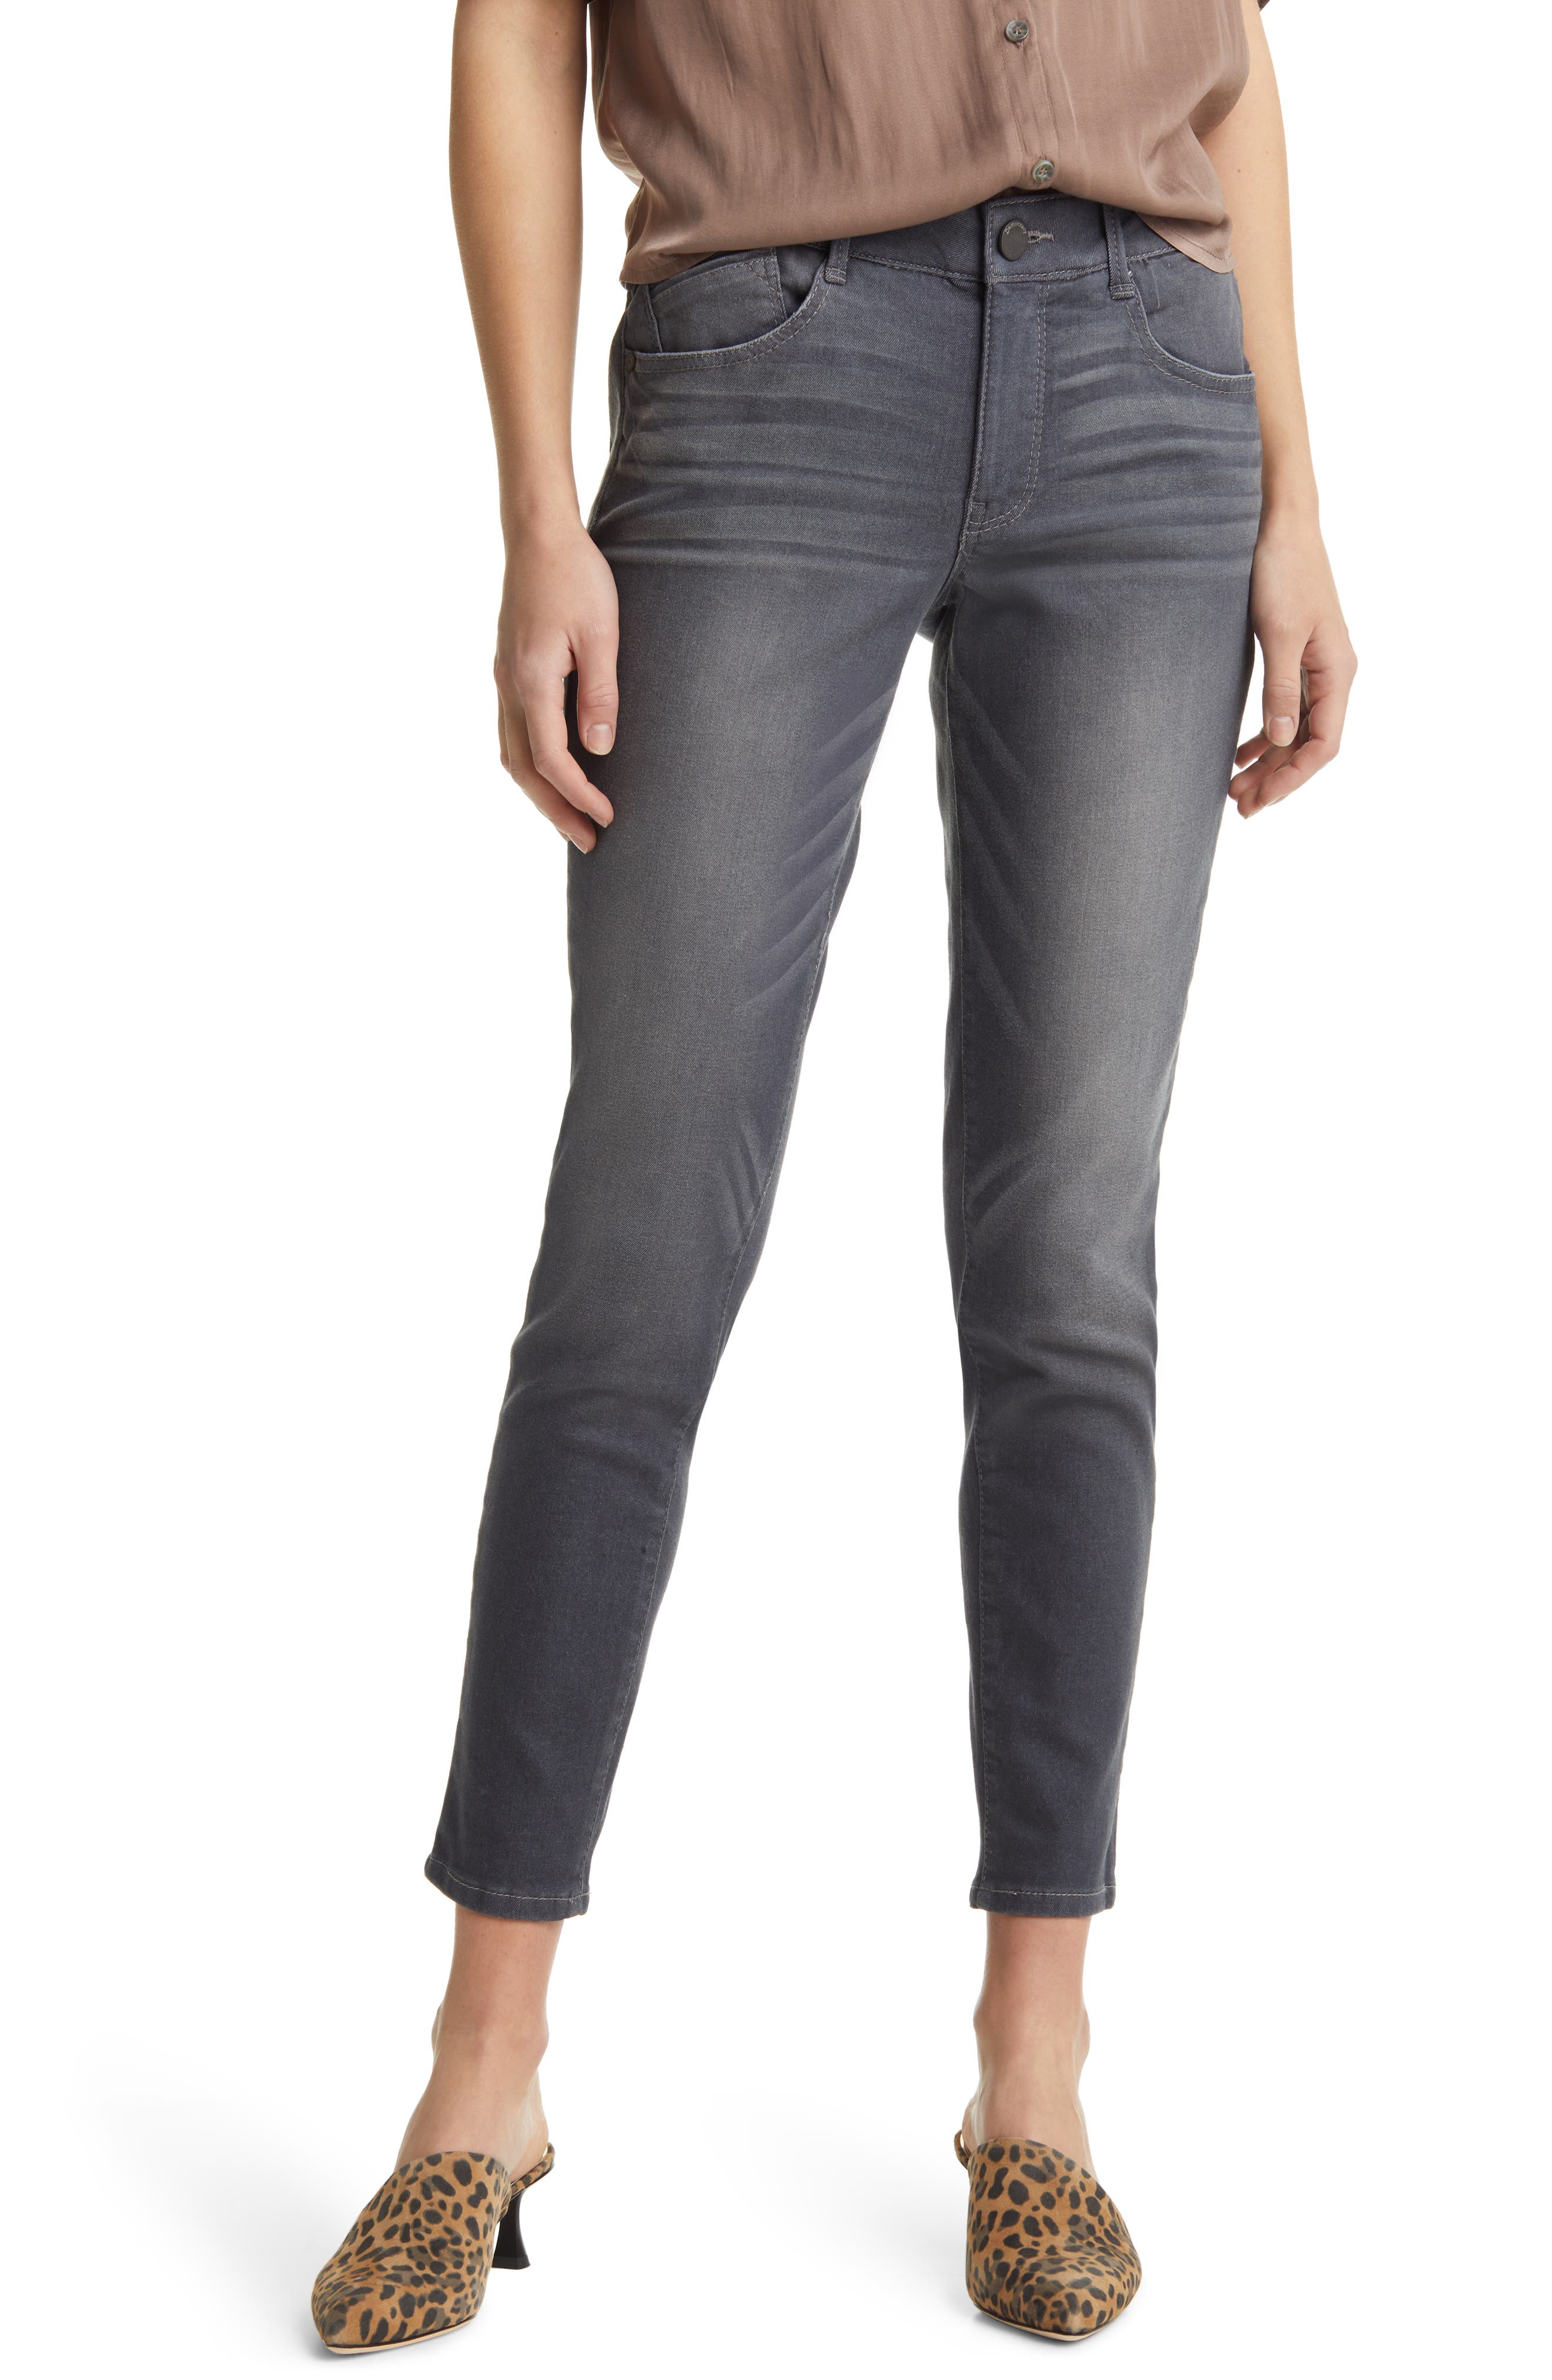 New Womens Ankle Capri Grey Skinny Jeans Stretch Pants Size 8 10 12 14 Stonewash 